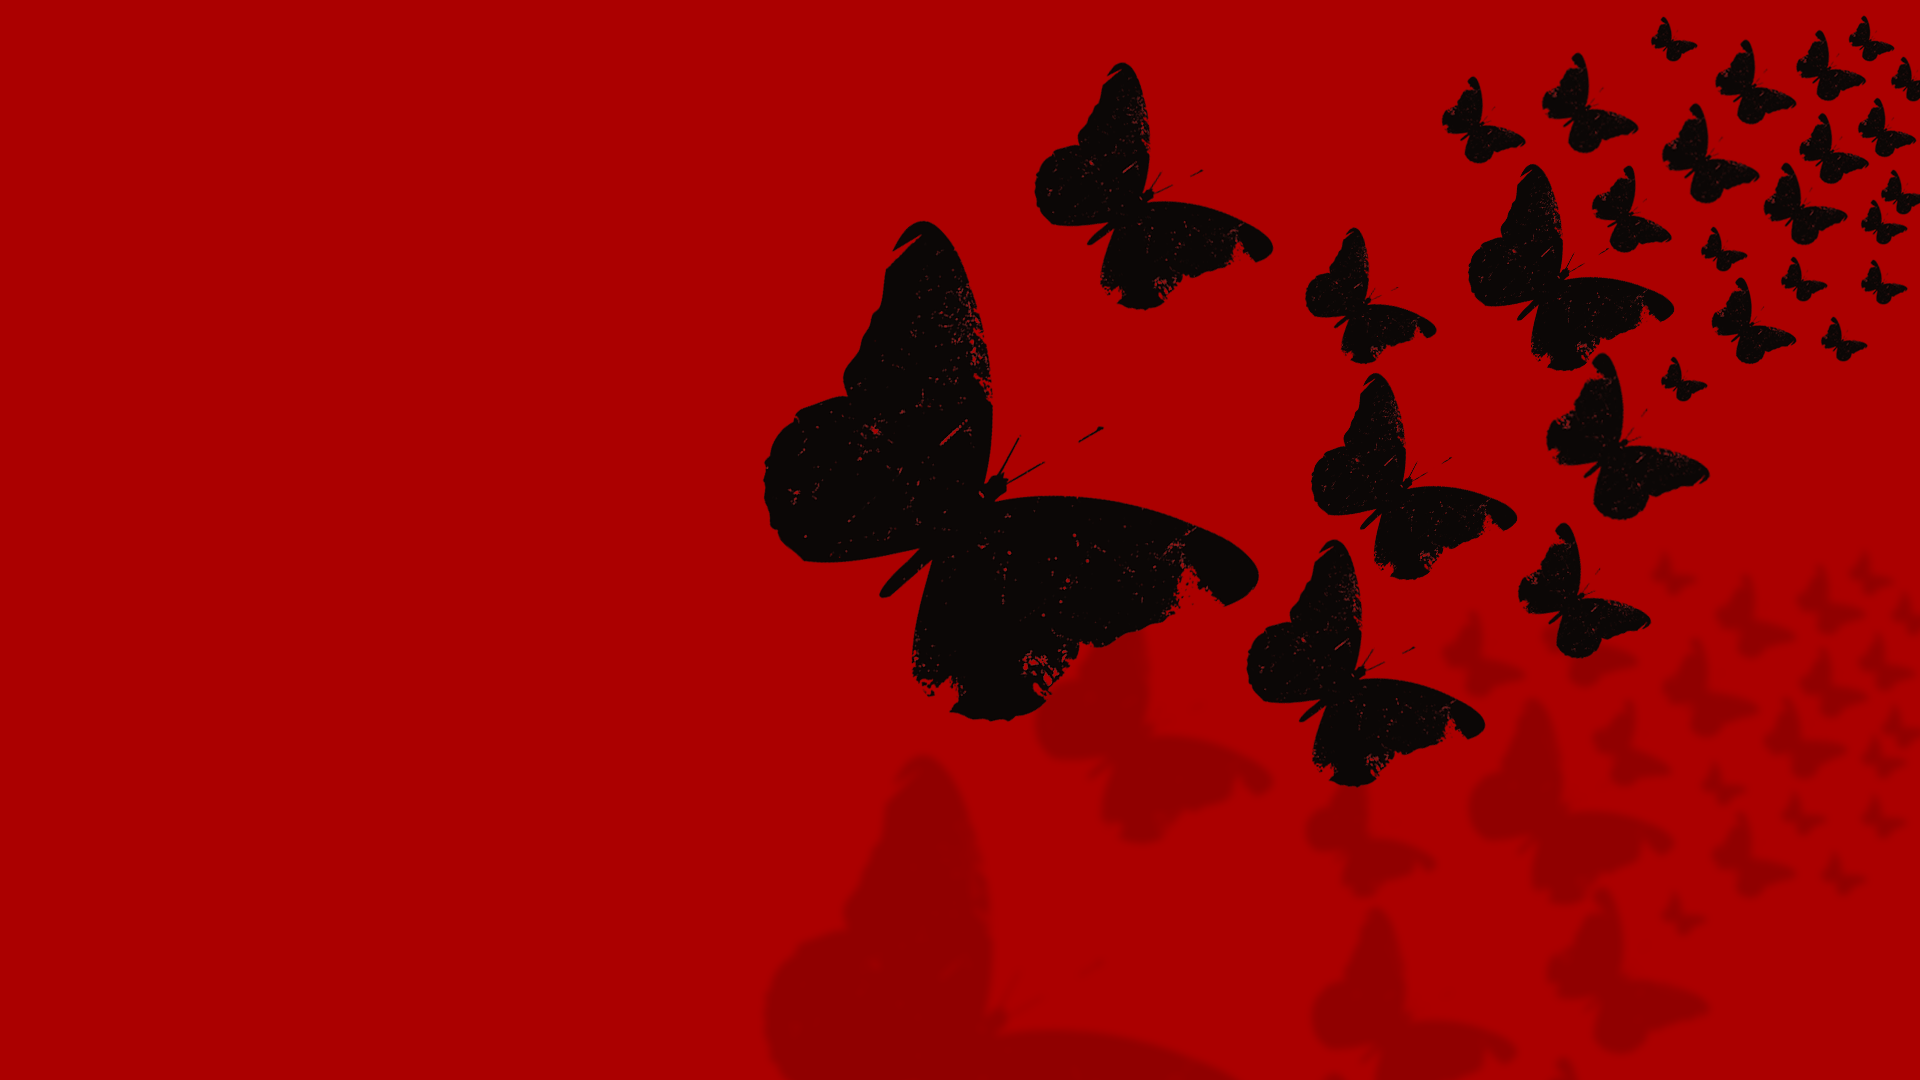 1920x1080 Hình nền con bướm đỏ và đen